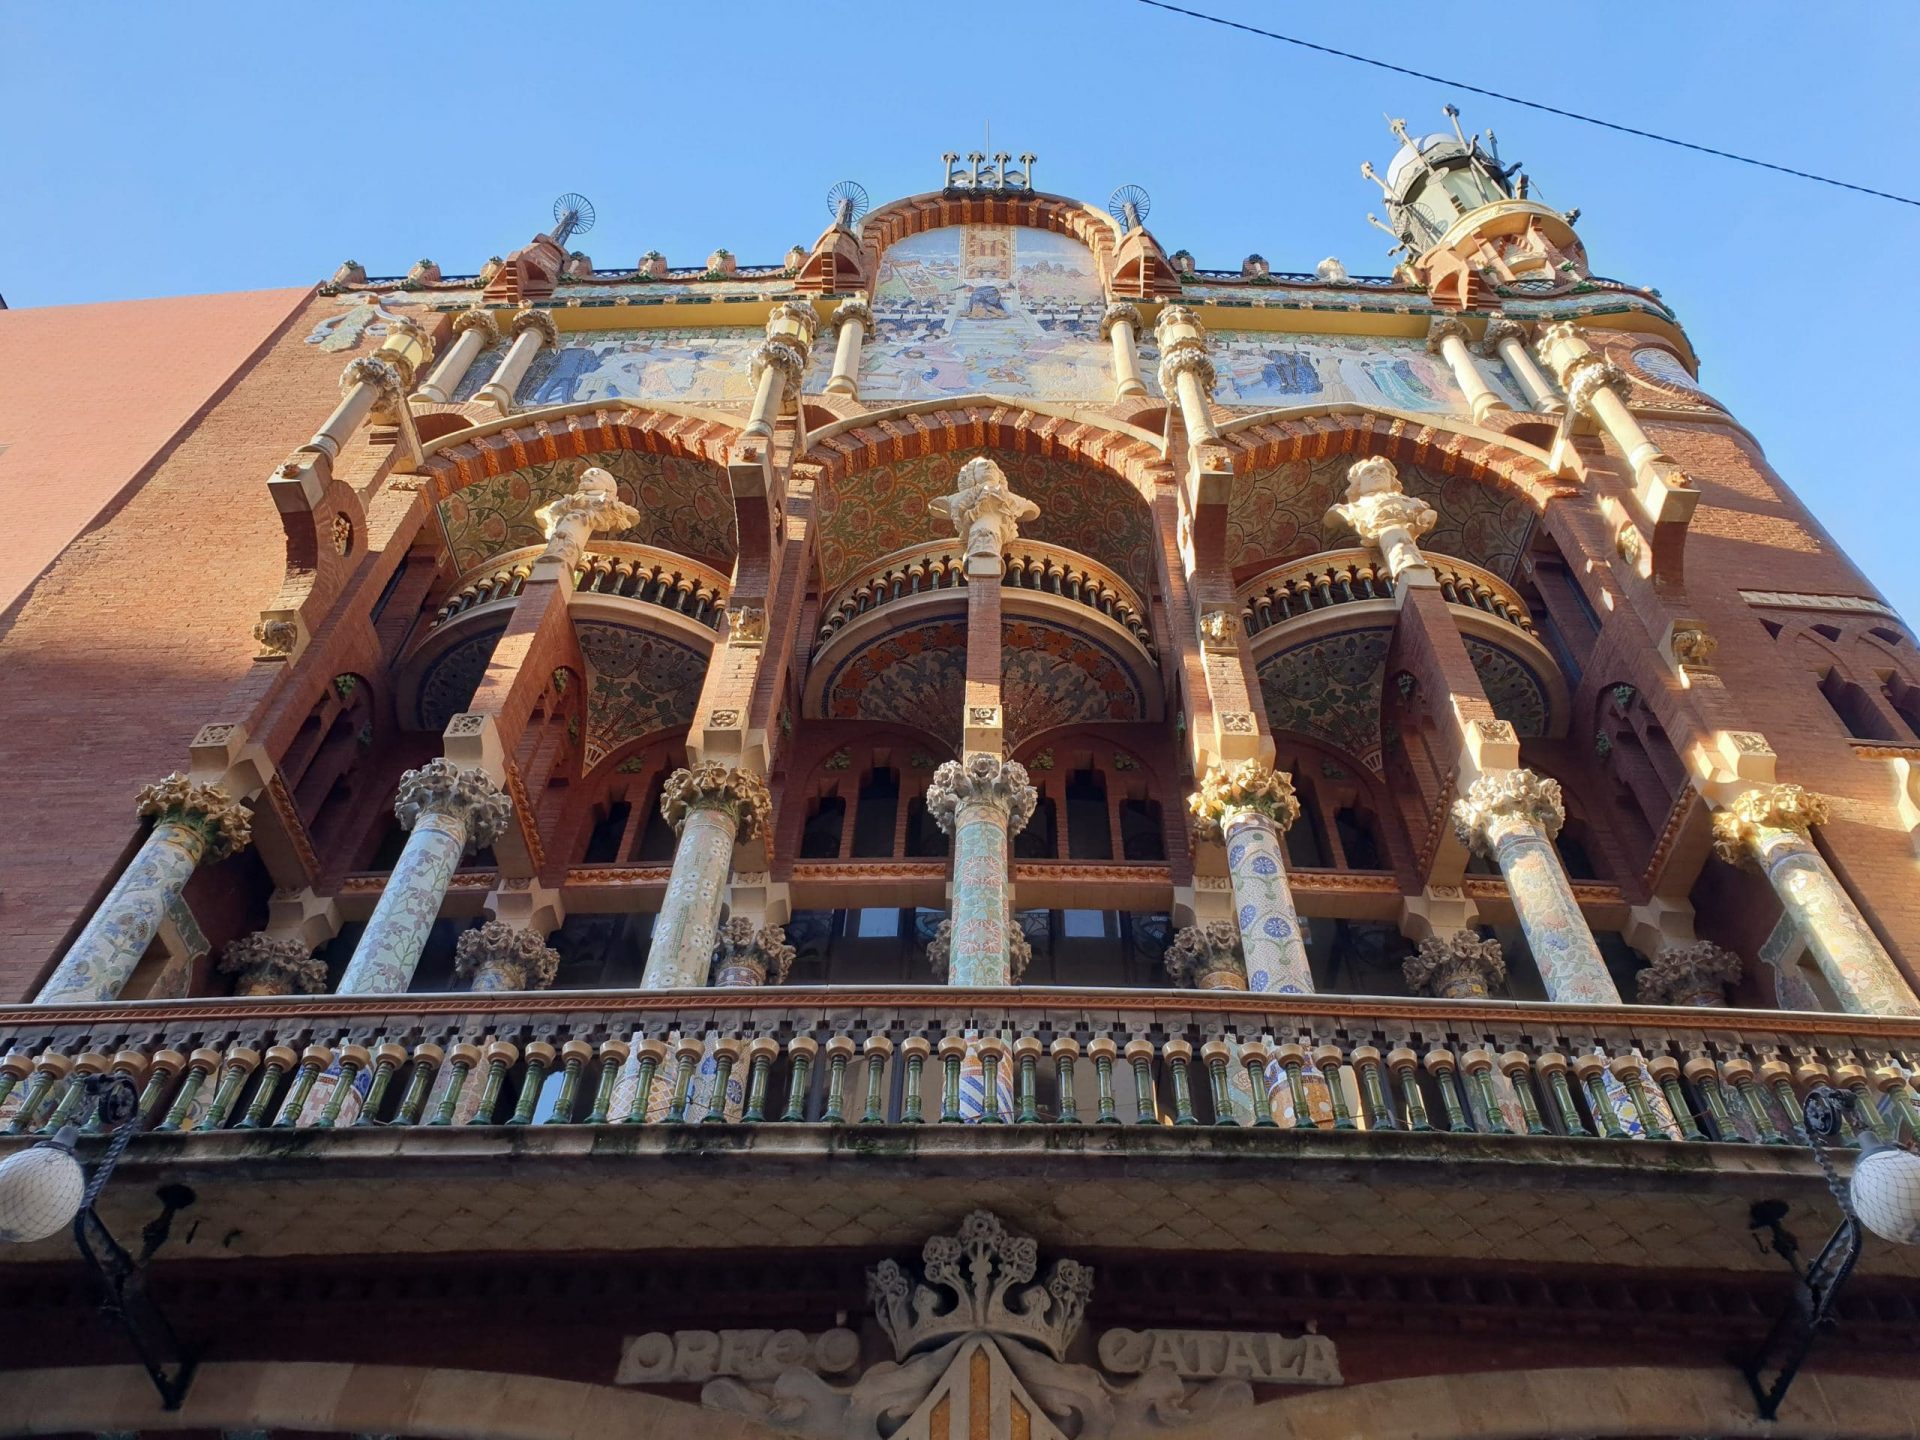 Ingresso principale del Palau de la Música, sito UNESCO, di Domènech i Montaner, Barcellona, modernismo catalano.